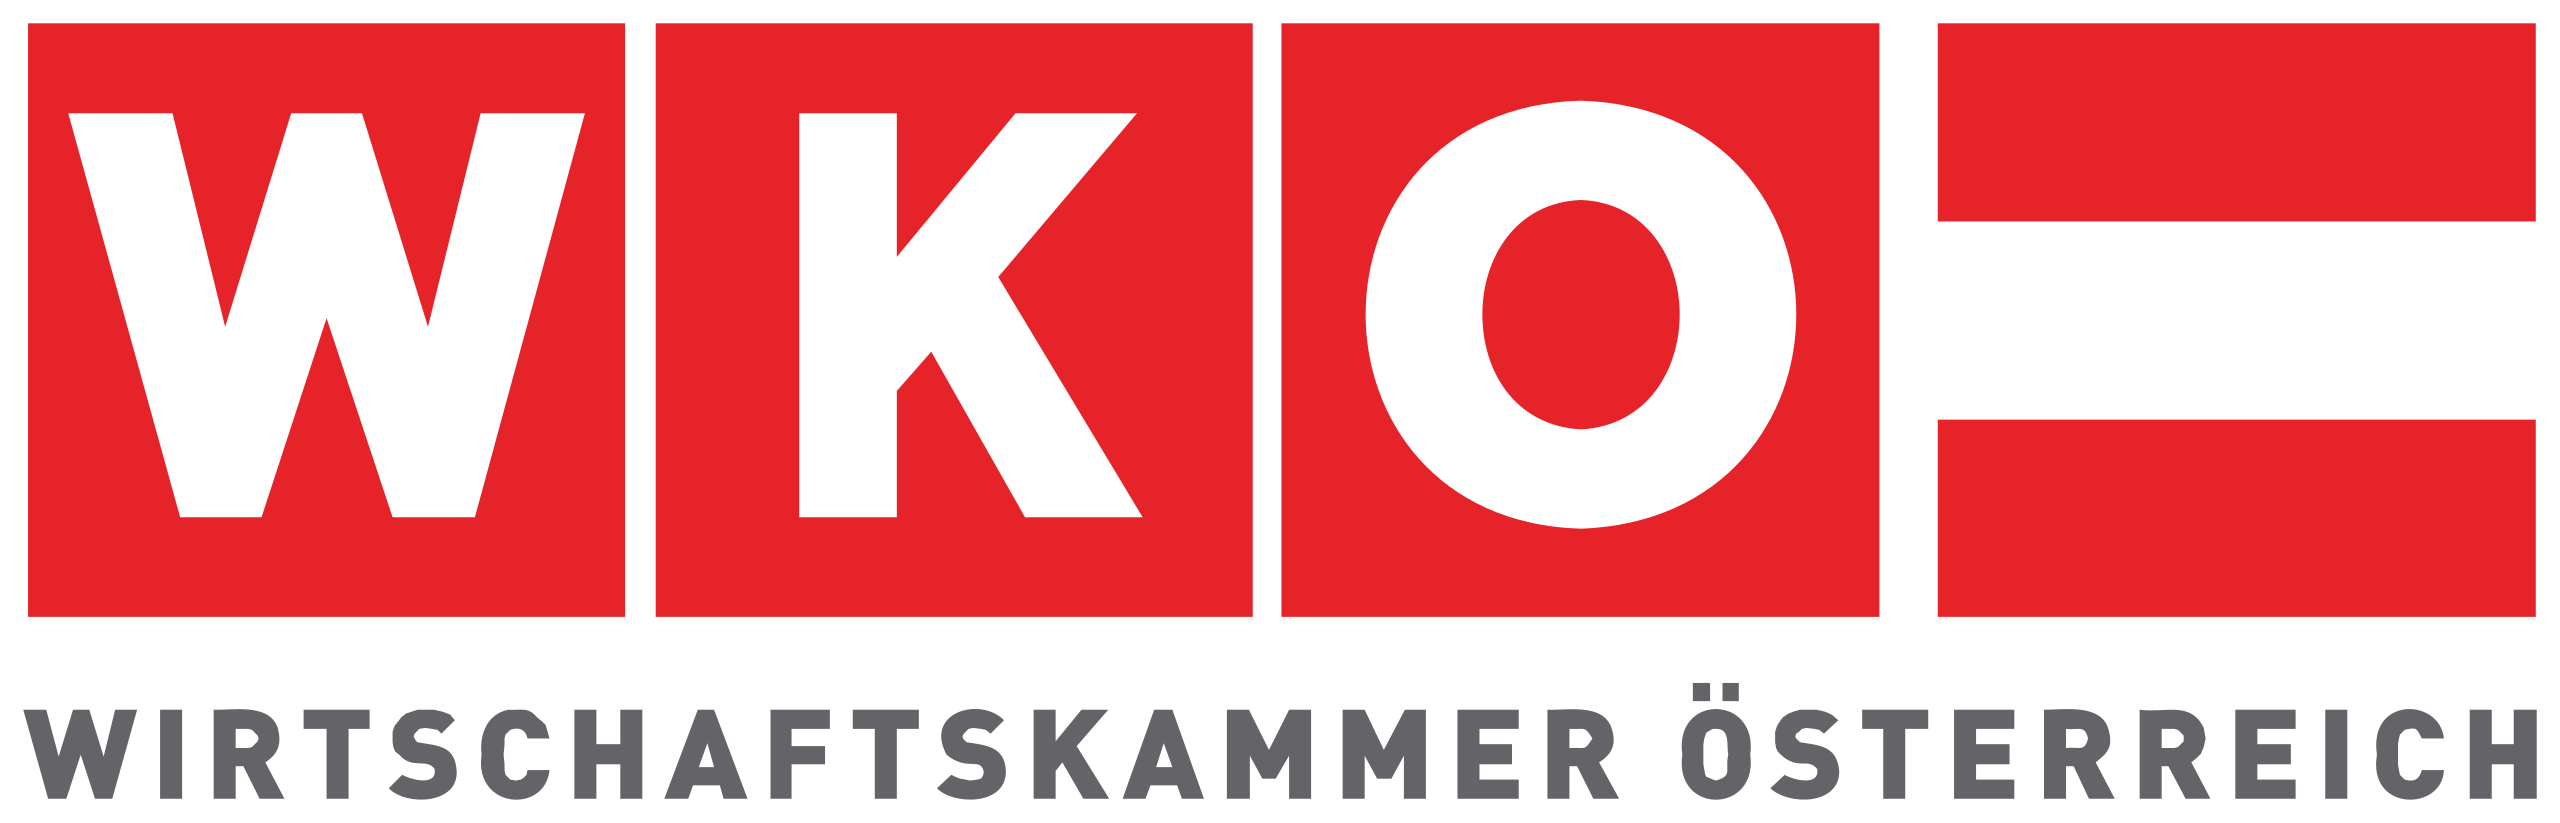 Wirtschaftskammer_Österreich_logo.svg